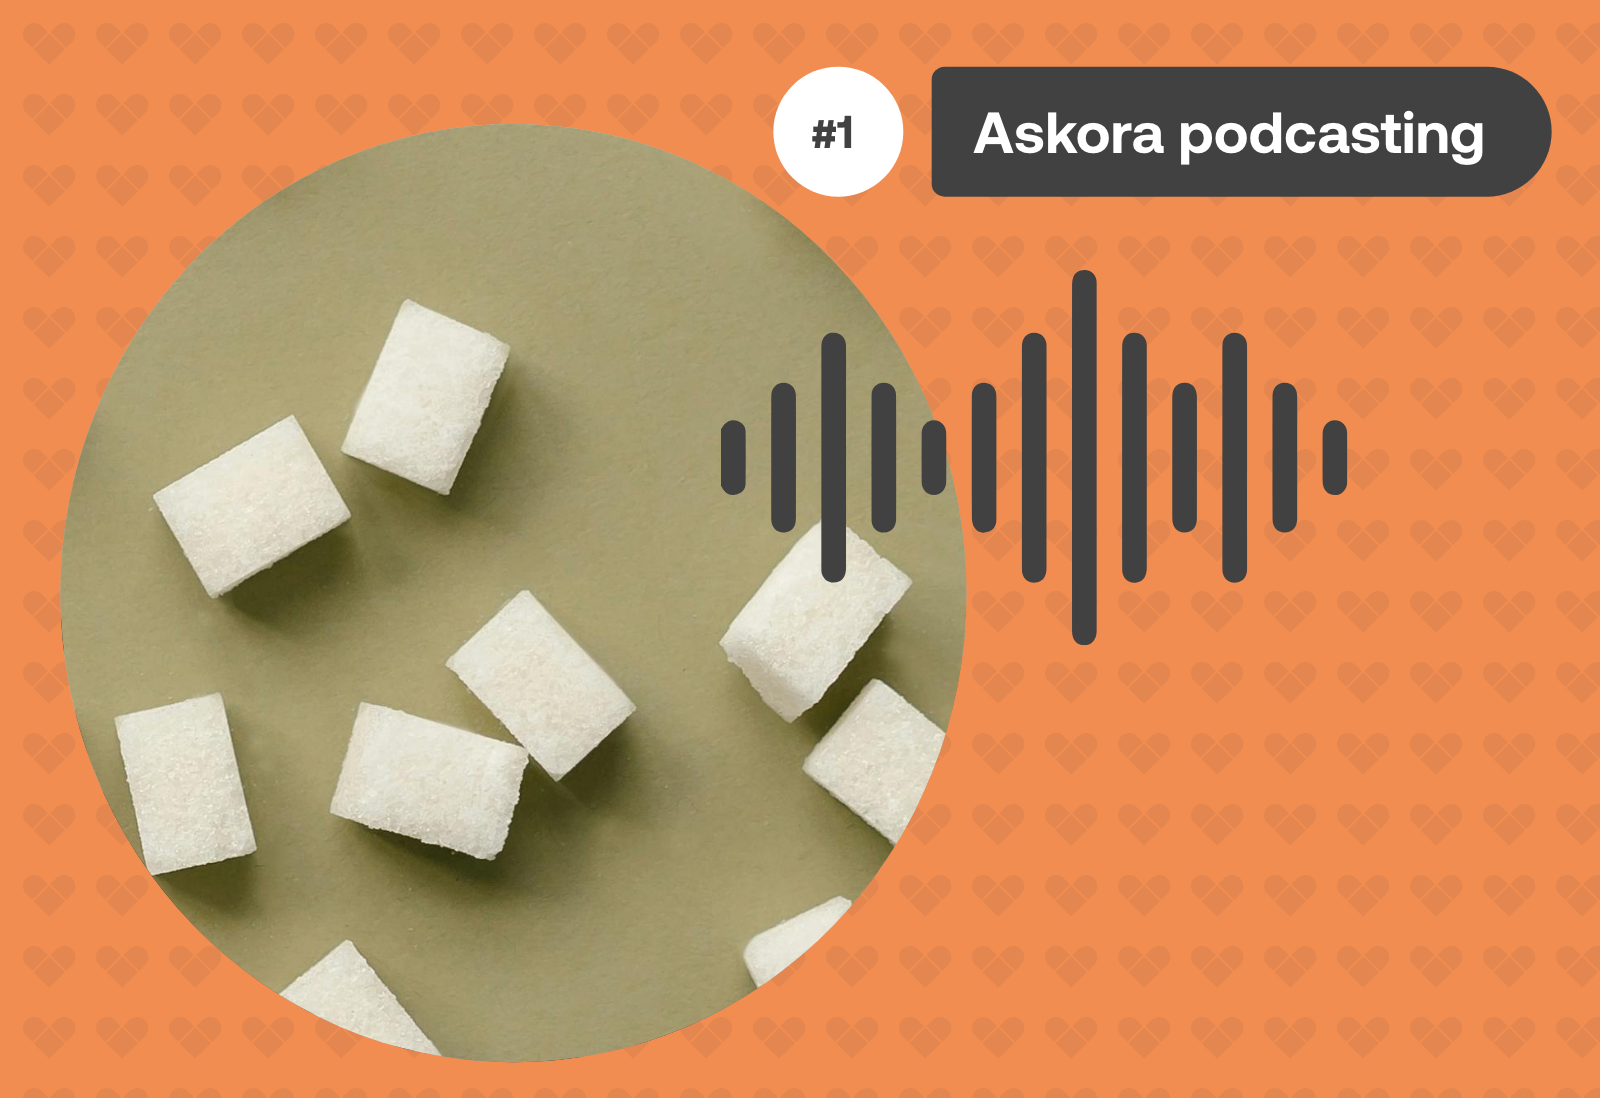 Estrenamos Askora podcasting, sobre la alimentación y nutrición